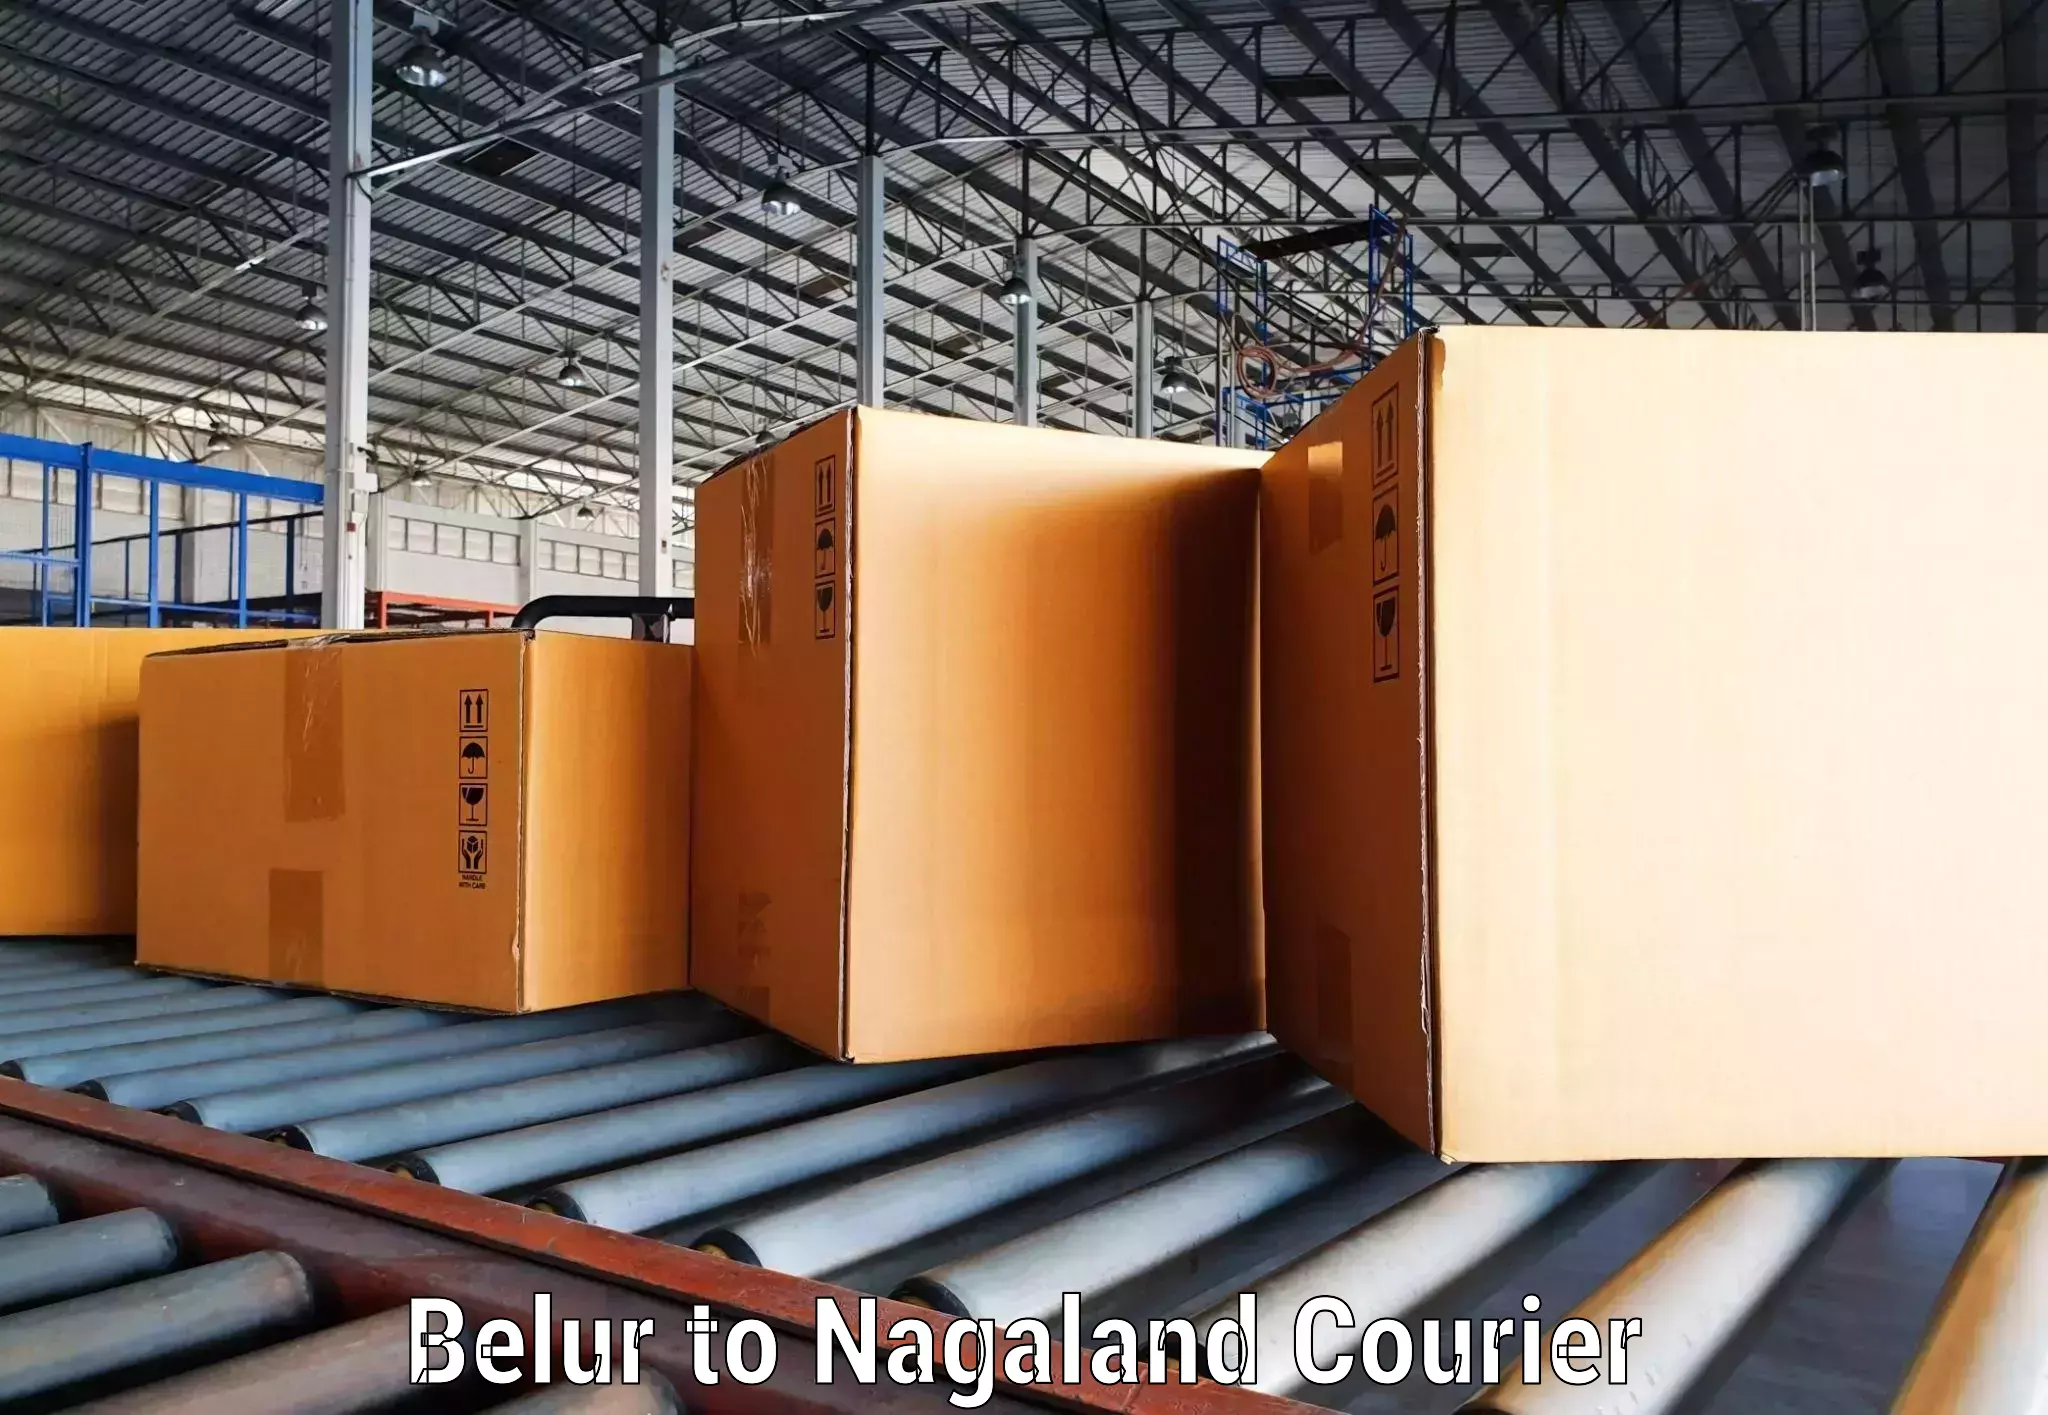 Courier service comparison Belur to Nagaland